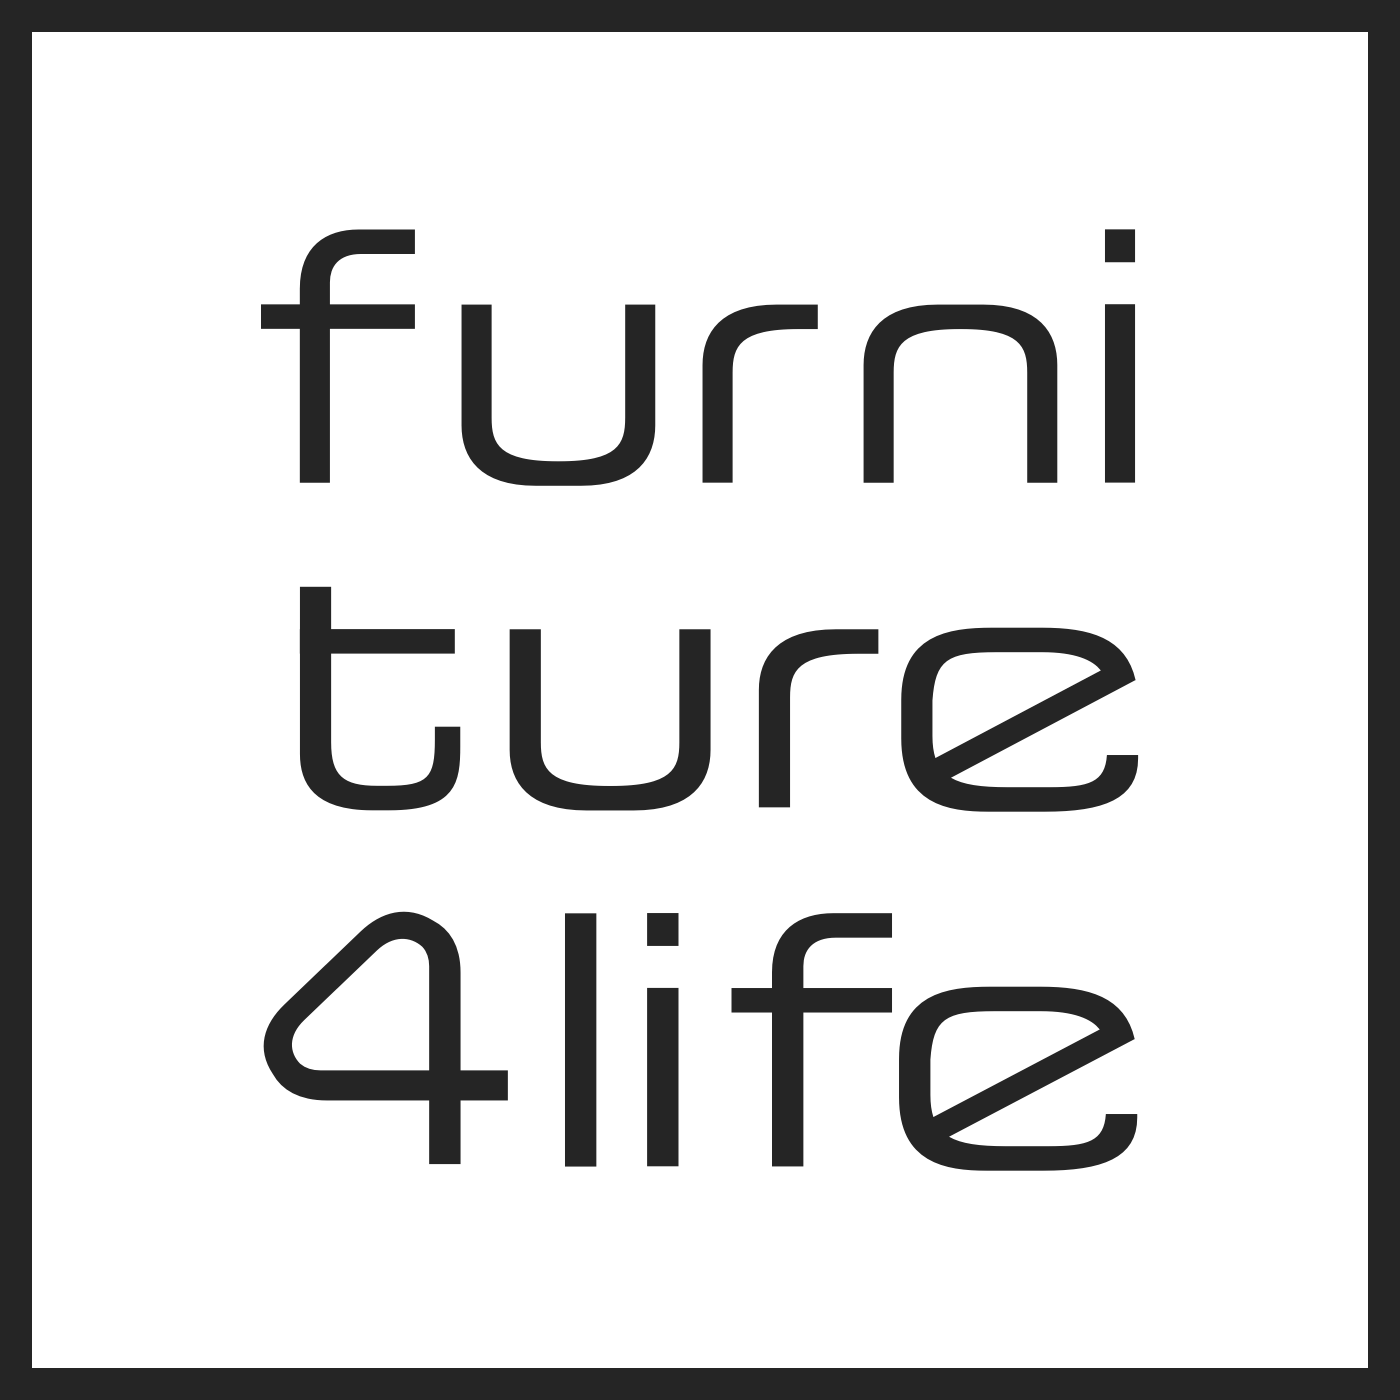 (c) Furniture4.life